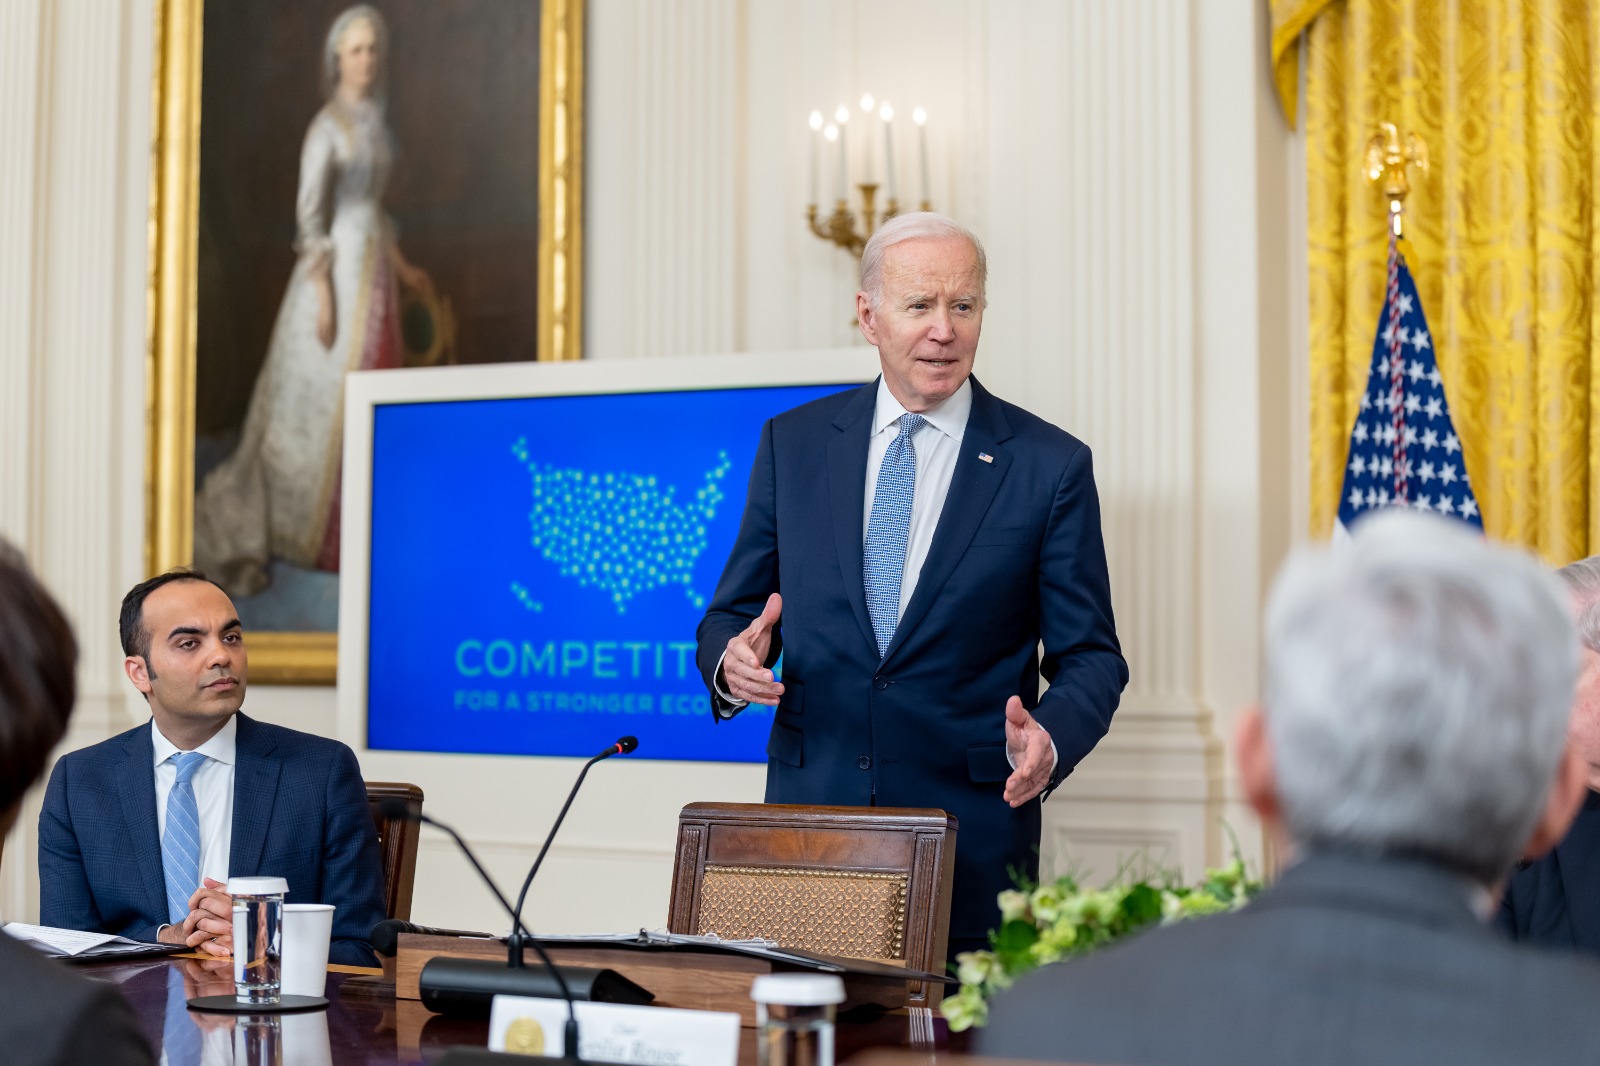 El Presidente Biden pronuncia un discurso durante una reunión del Consejo de Competencia. Foto: Twitter POTUS.